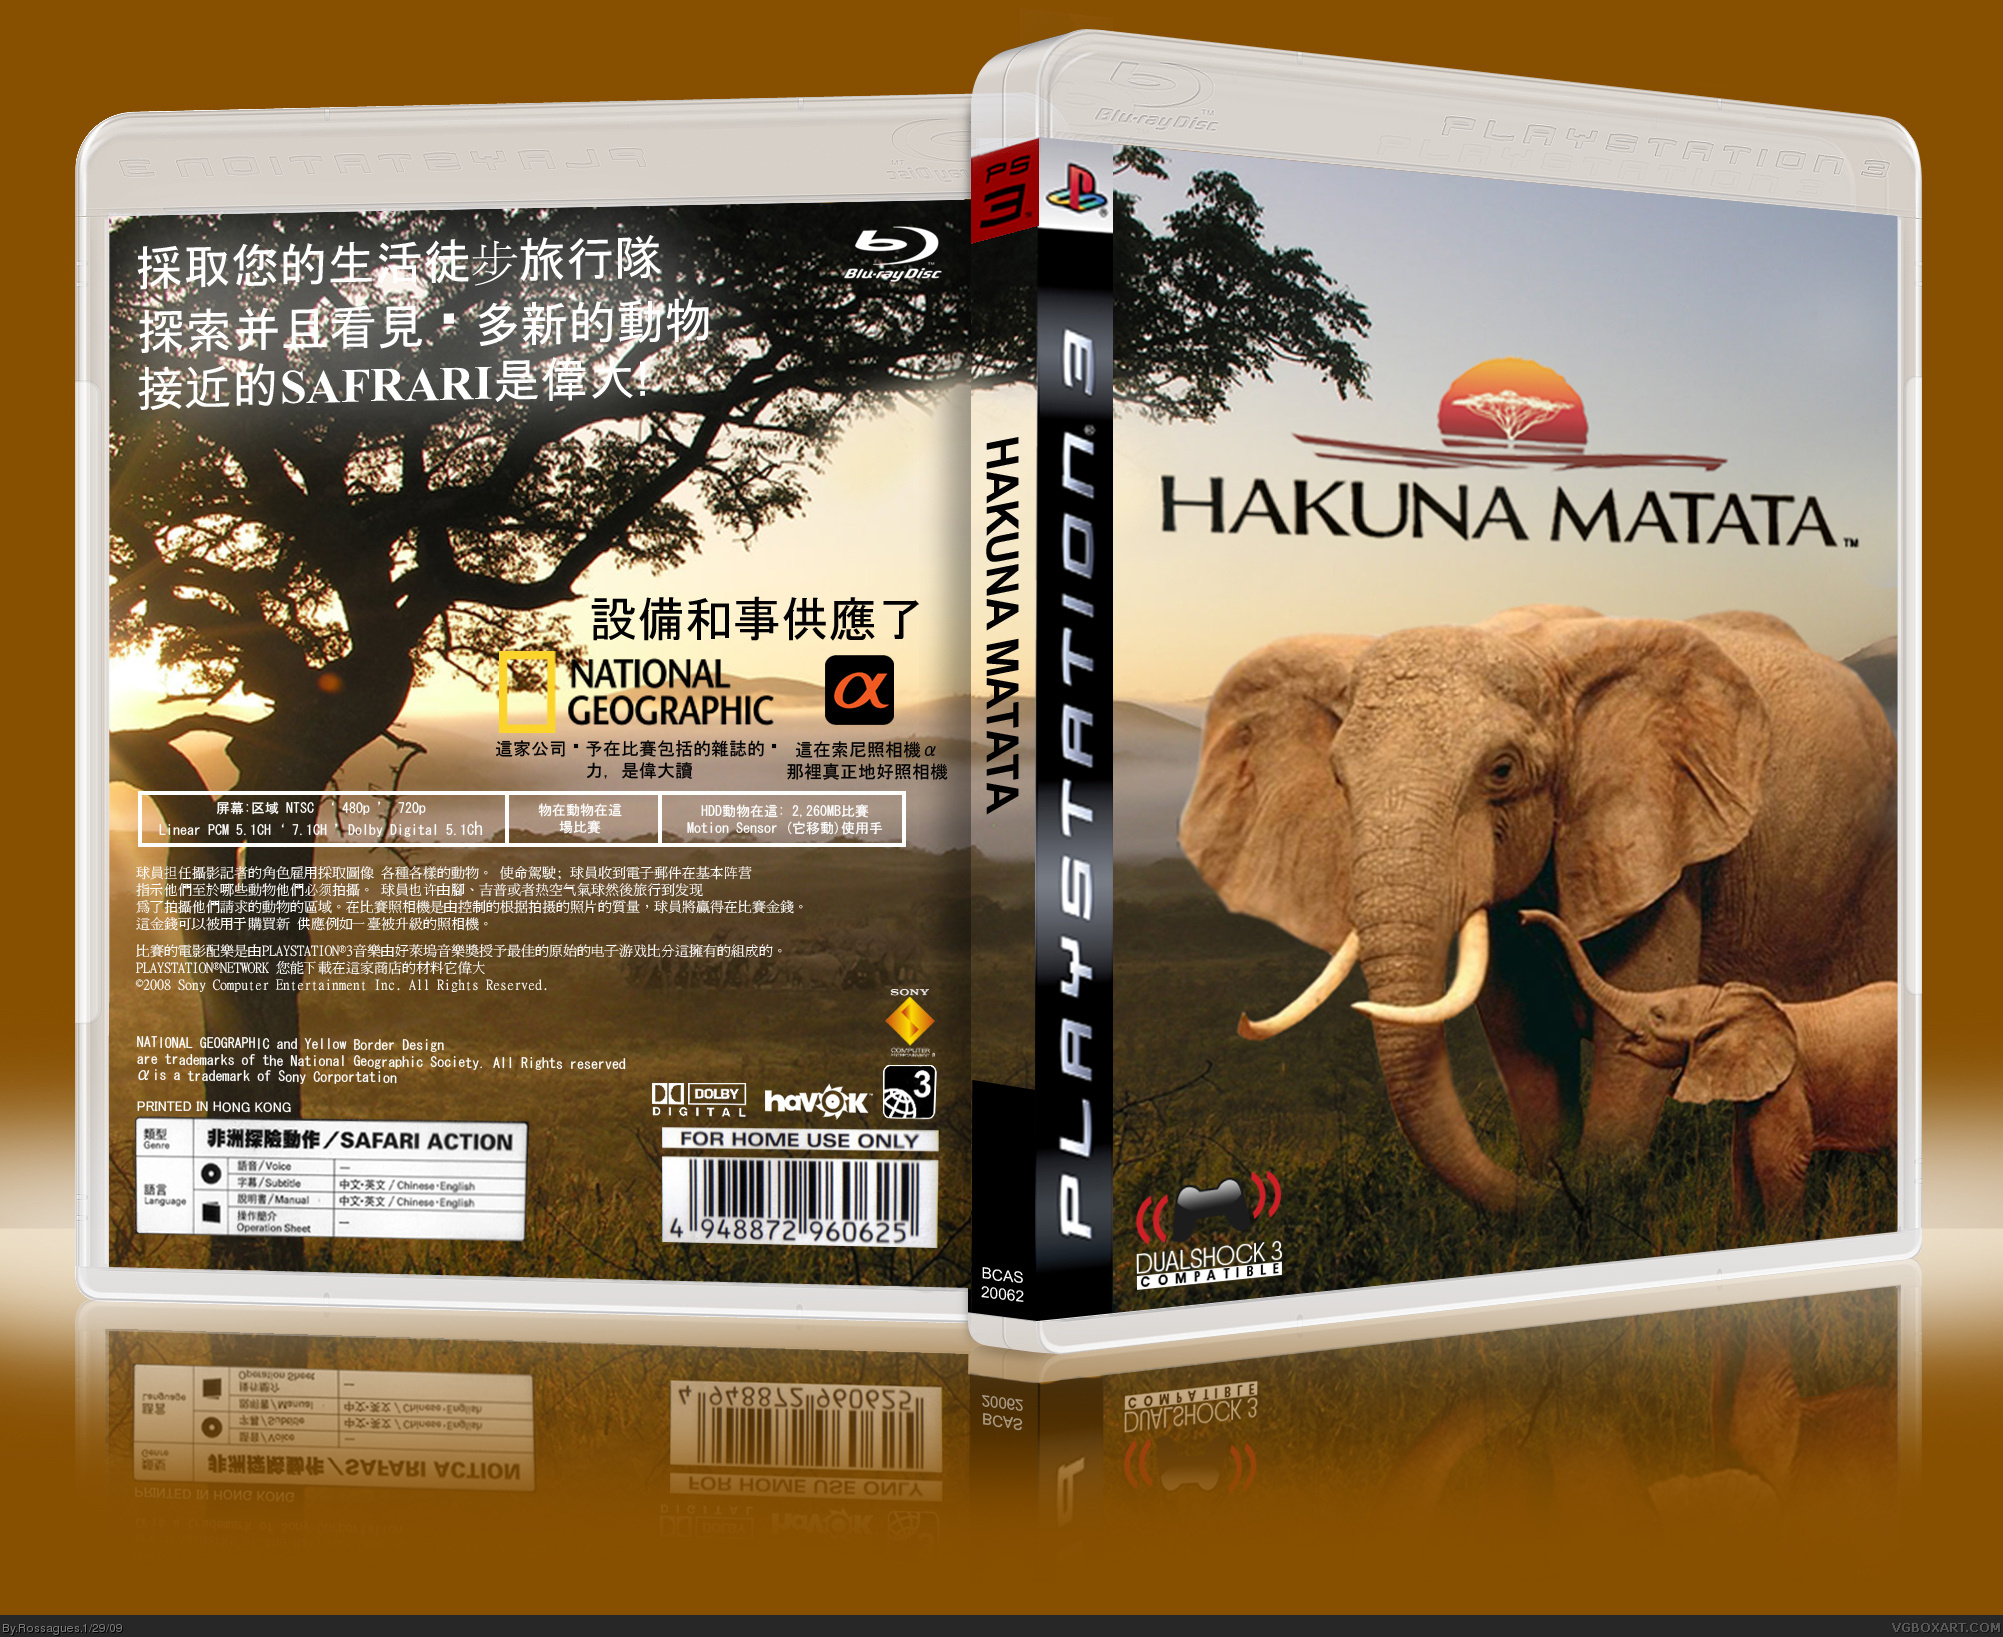 Hakuna Matata box cover